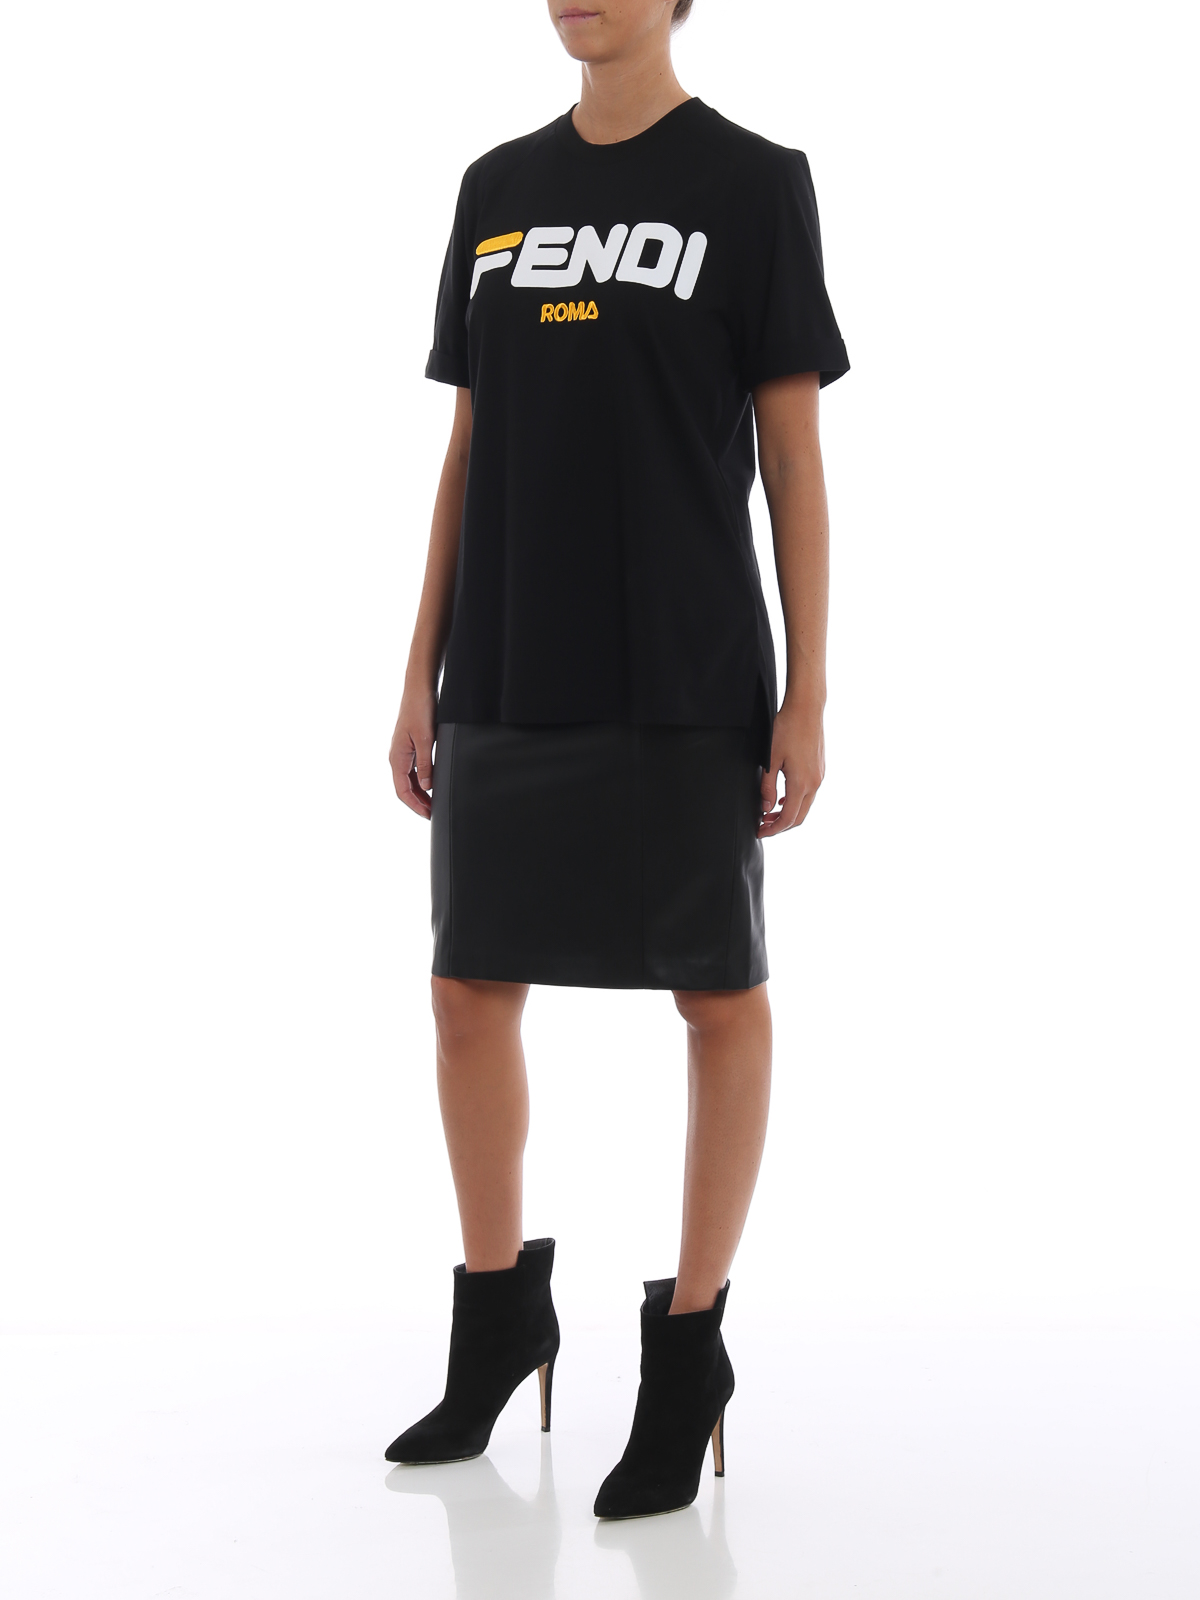 Tシャツ Fendi - Tシャツ - 黒 - FS7074A5H1GME | iKRIX shop online